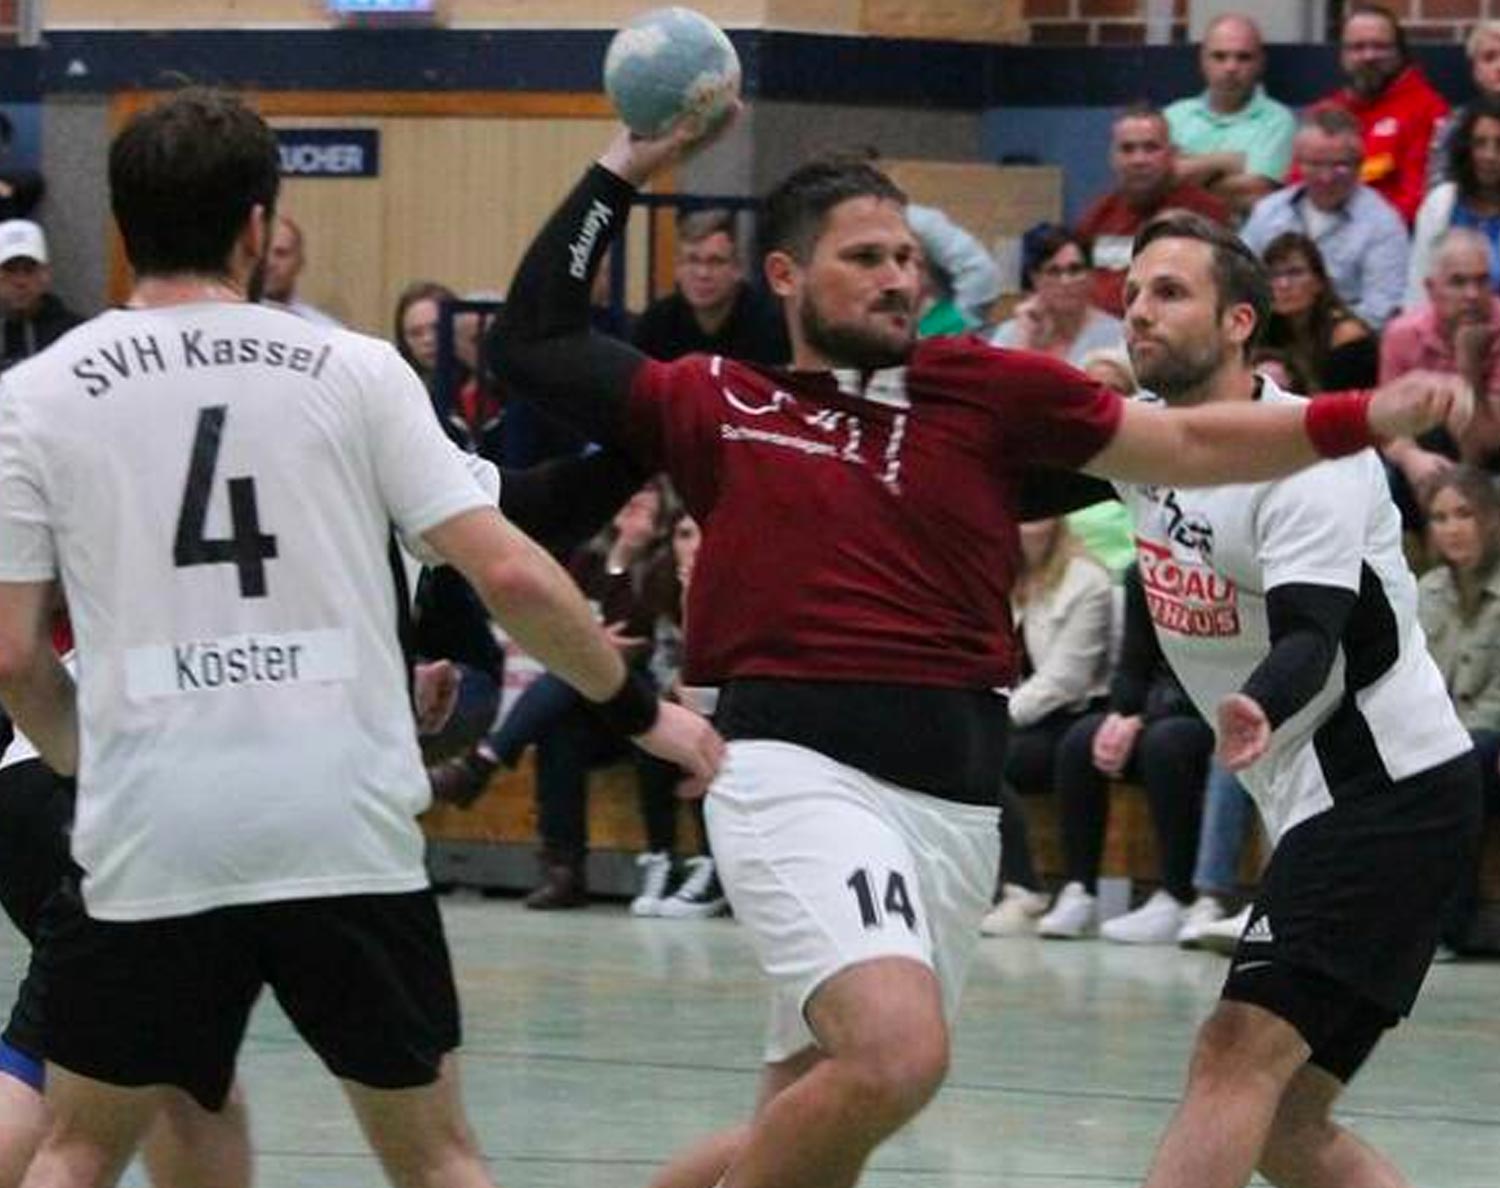 Daran müssen sich die Rotenburger Handballfans mit Sicherheit erst gewöhnen: Boze Balic (in Rot) im Wanfrieder Trikot, hier im Heimspiel seines neuen Klubs gegen die SVH Kassel. Foto: Lisa Steinbach/NH